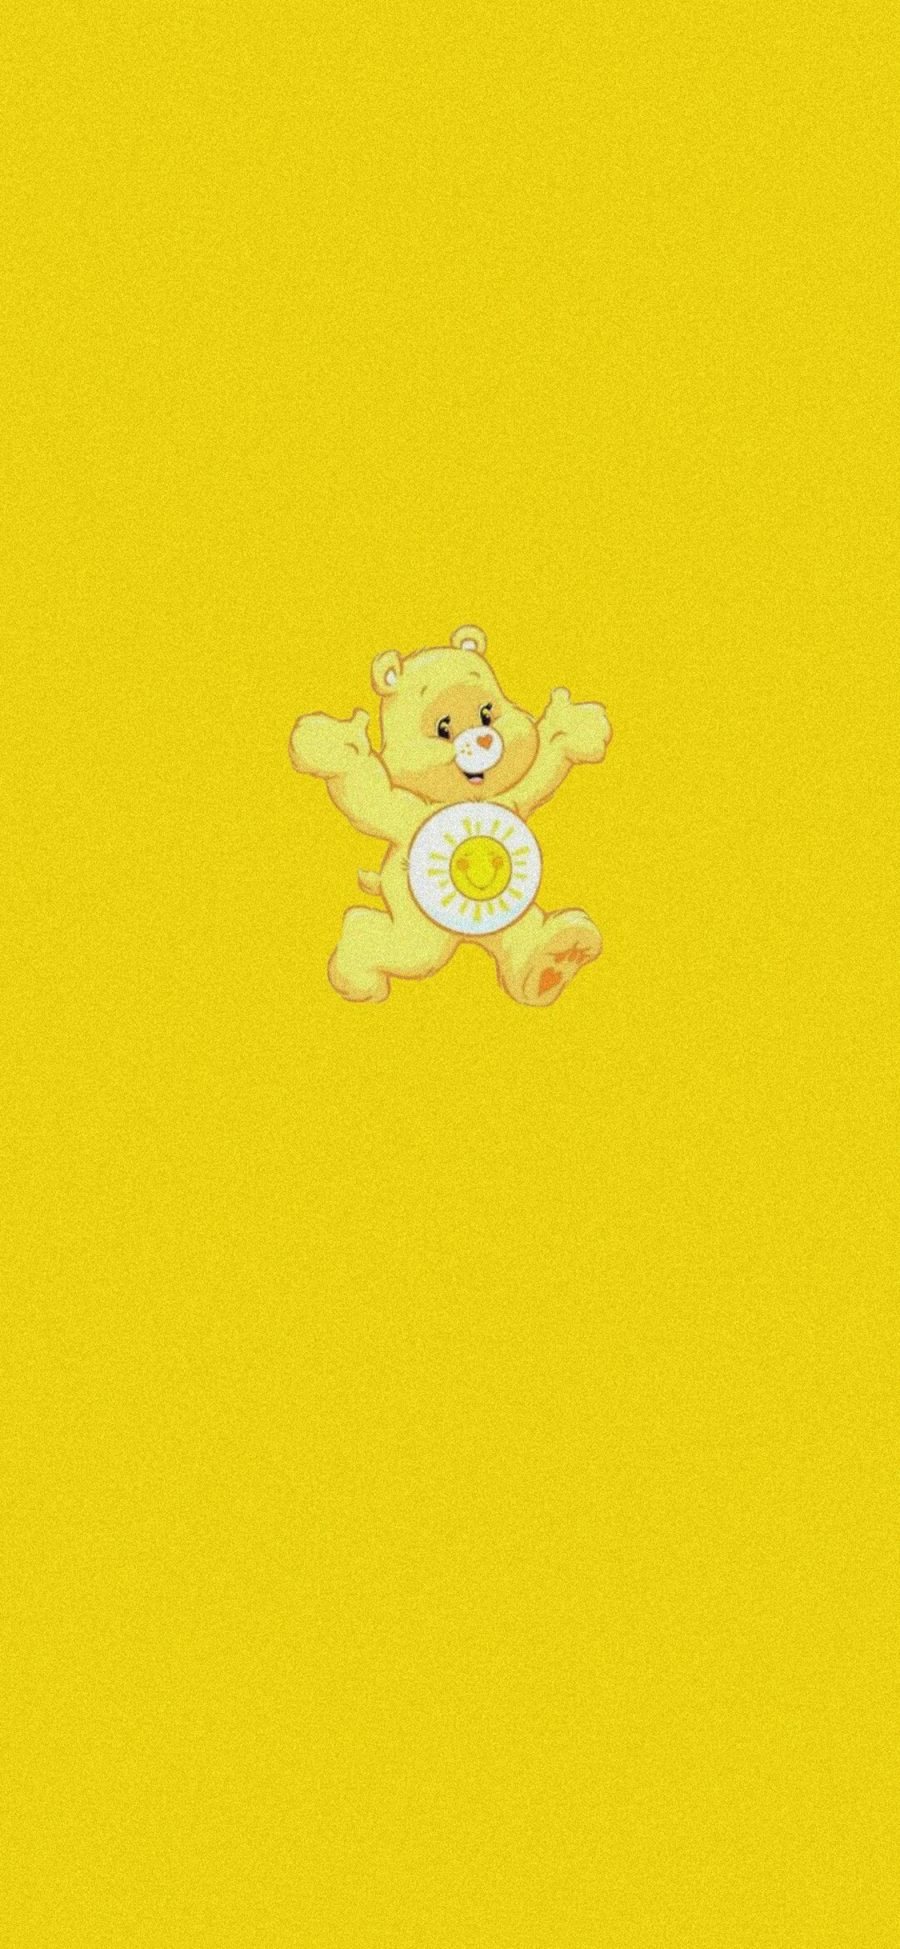 [2436×1125]黄色 背景 彩虹熊 爱心熊 苹果手机动漫壁纸图片